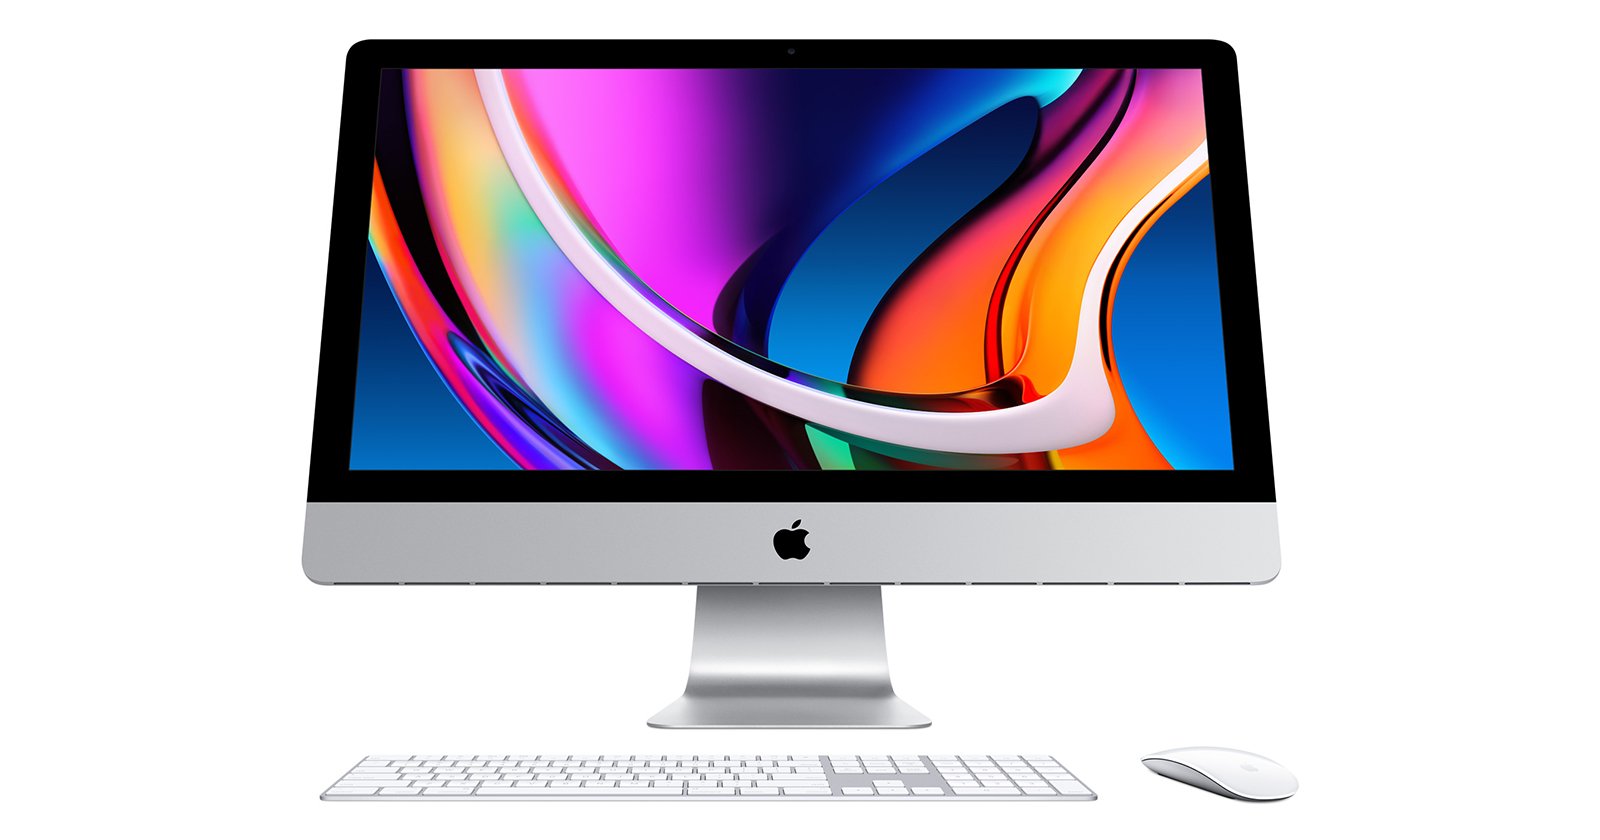 buy more memory for mac desktop